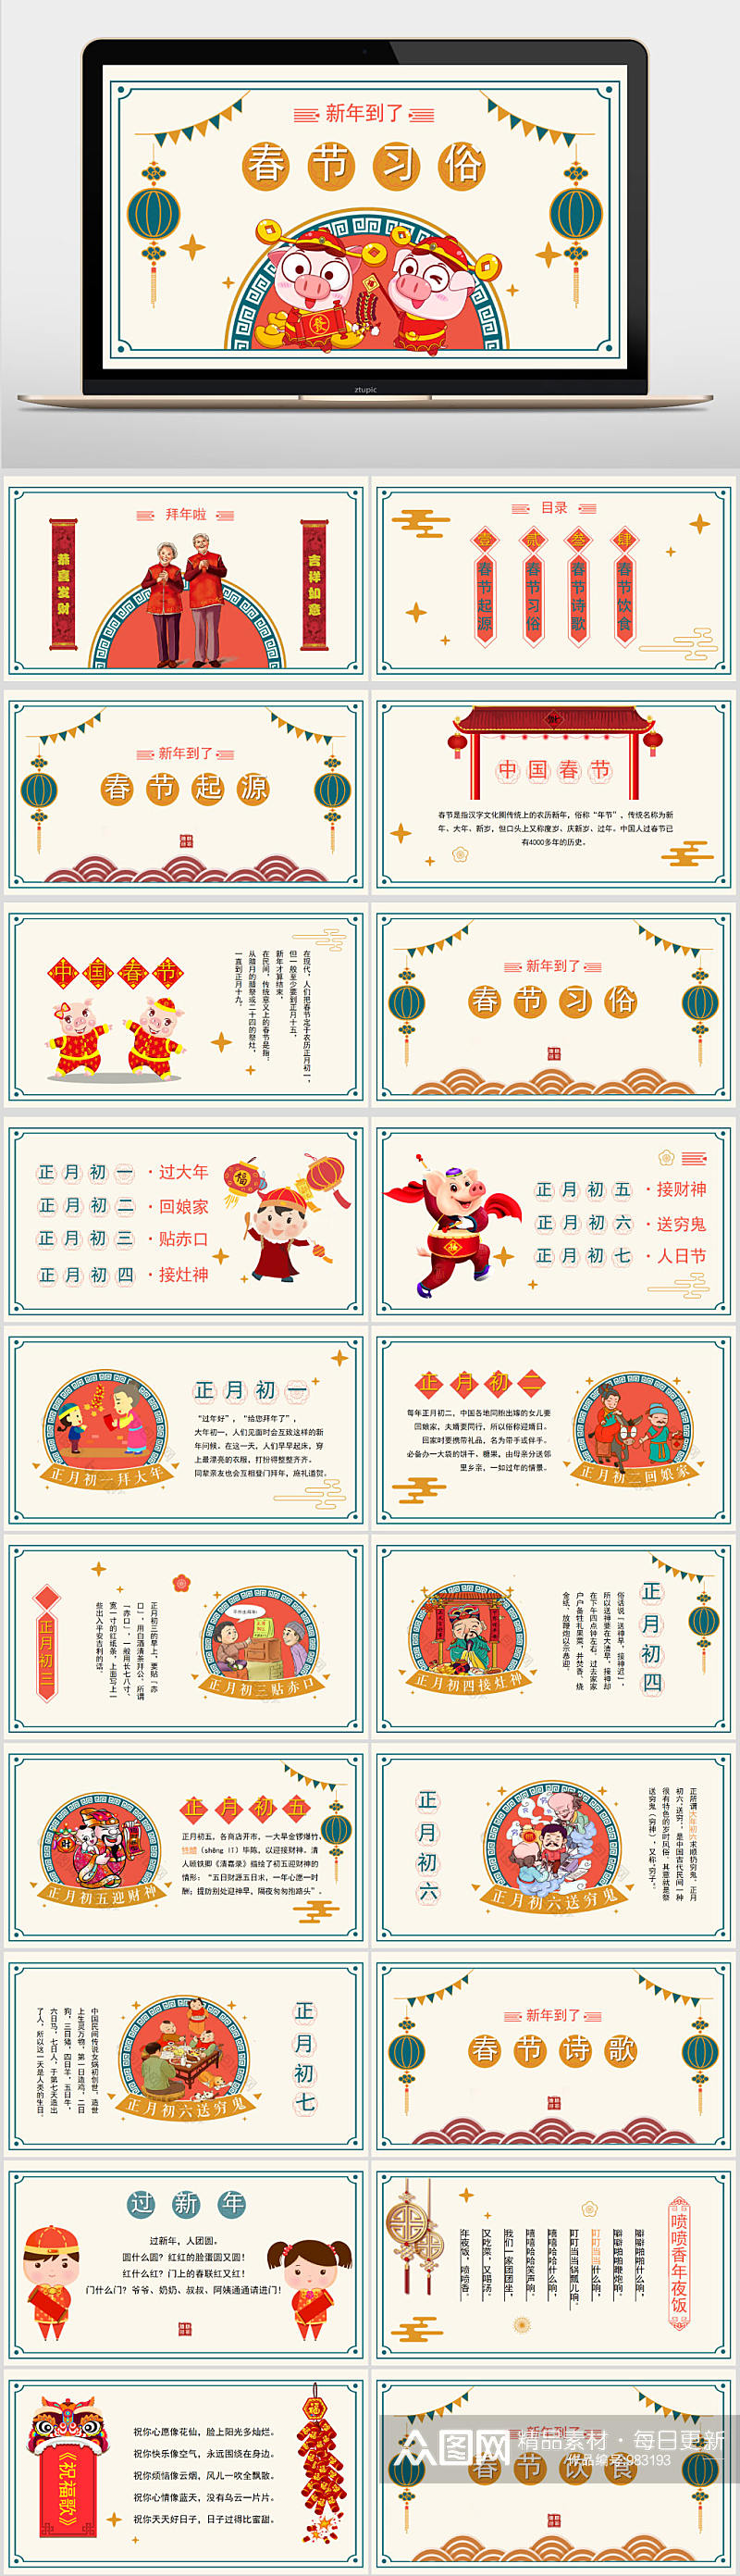 中国春节卡通风传统习俗介绍PPT模板素材